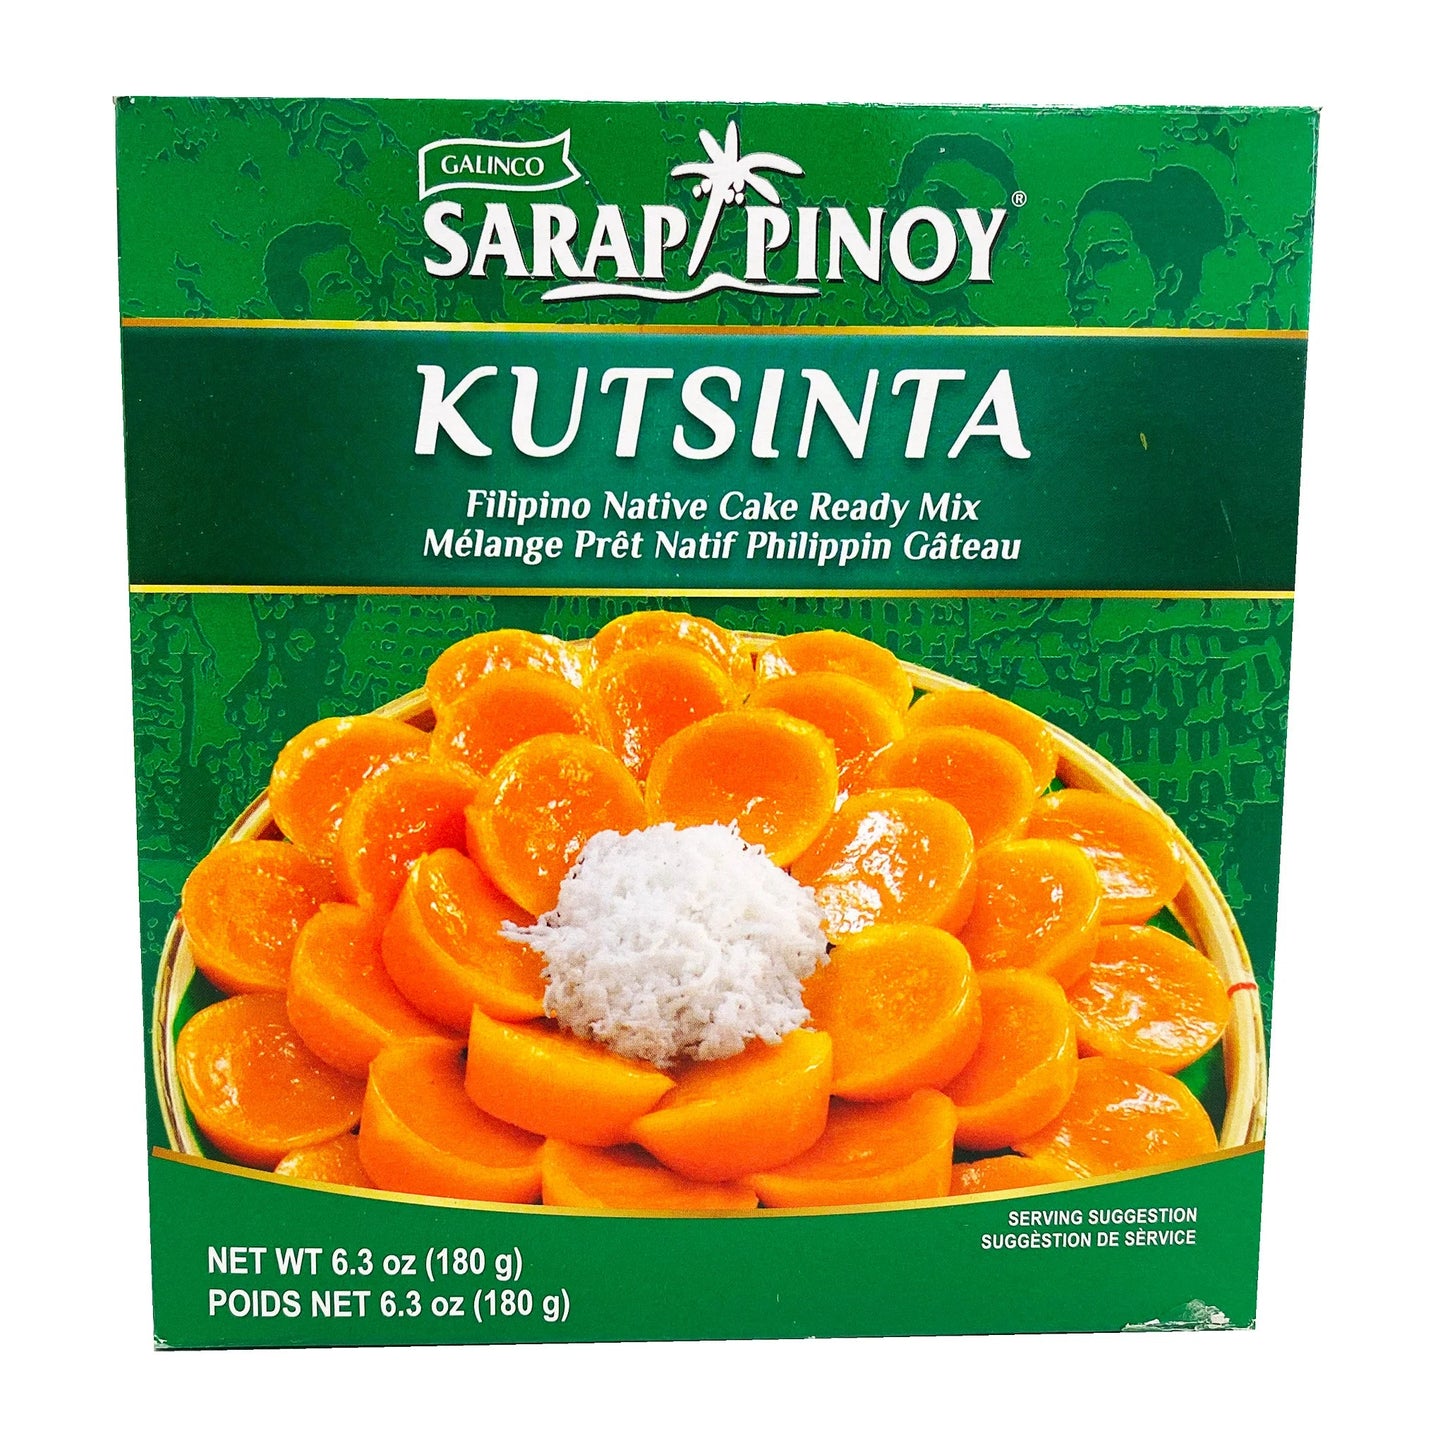 Sarap Pinoy Kutsinta (Filipino Native Cake Ready Mix) 180g